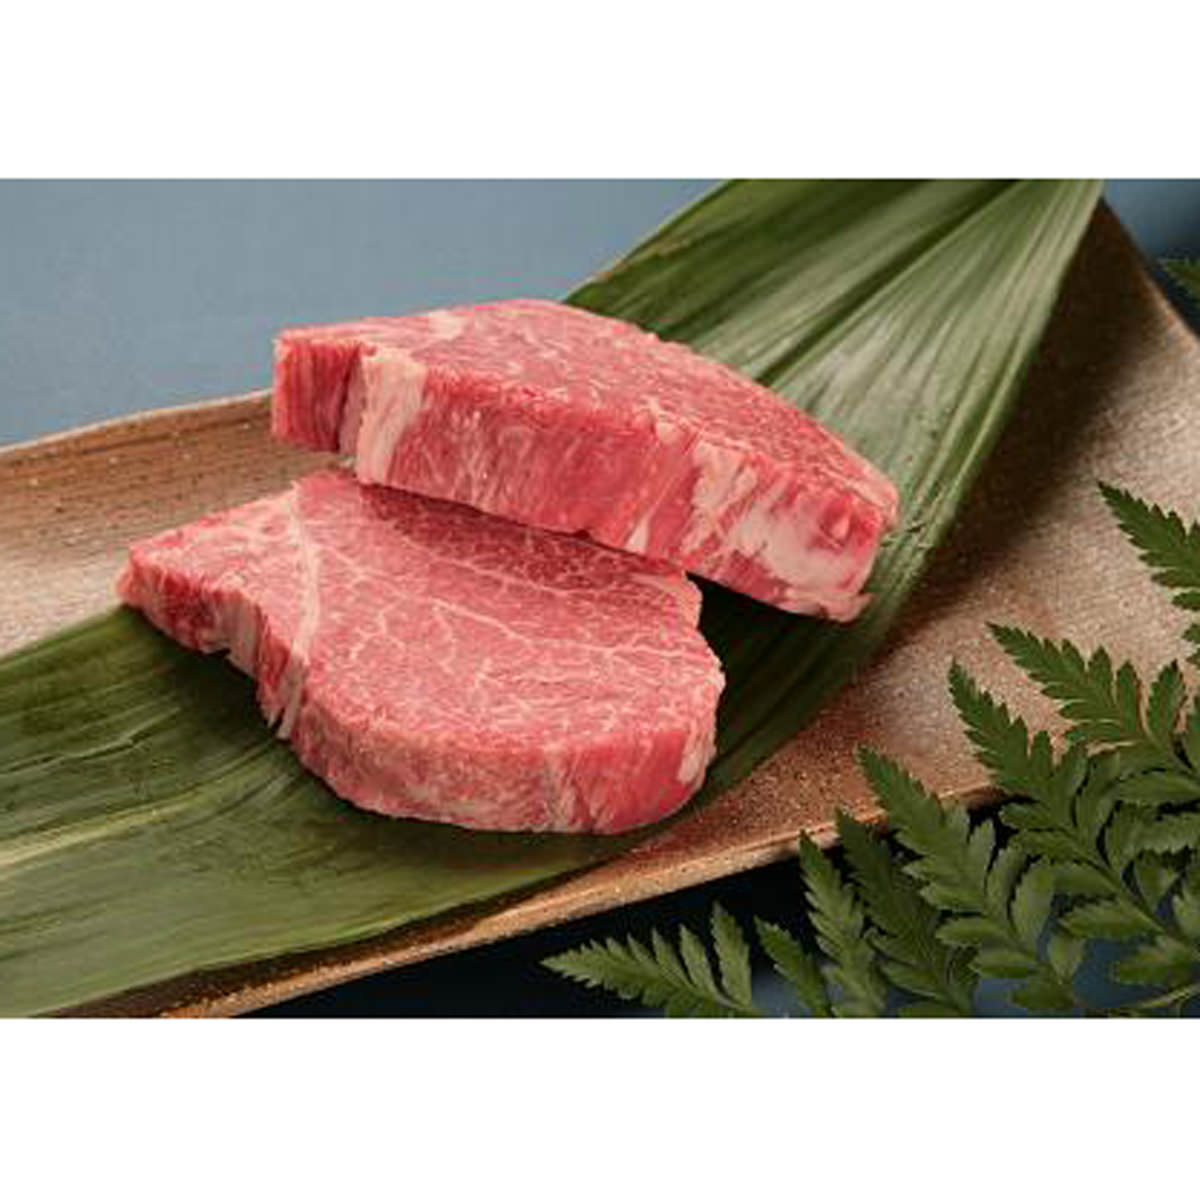 【記念日のごちそうは希少部位の神戸牛ステーキで贅沢なひとときを】神戸ビーフは、海外でもその名が知られている高級ブランド牛です。黒毛和牛の中でも優れた品質であるといわれる兵庫県産の但馬牛の中から、さらに厳しい基準をクリアした牛肉だけが神戸牛(神戸ビーフ・神戸肉)に認定されます。きめ細やかな霜降りの肉質は、赤身の甘さと脂肪の風味が絶妙で、食べた瞬間に口の中でとろけるような神戸牛特有のまろやかな食感と味わいで、しつこくなく、あっさりしていて食べやすいお肉です。「神戸牛 ヘレステーキ 320g」をフレッシュ直送便でお届けいたします。フランス語でこの部位のことを「フィレ」と呼ぶことから「ヘレ」という名称になったと言われています。他の部位と比較すると最も運動をしない部位であるため一番柔らかい部分で、きめが細かく脂肪が少ないです。一頭の牛から得られるお肉の中で、ヘレの占める割合はわずか3%程度ととても希少で高級部位です。ヘルシーであっさりとした味わいは女性はもちろん、ご年配の方にも人気です。お祝いのごちそうとしてはもちろん、大切な方やお世話になったあの人へのご贈答品としても喜ばれます。【確かな品質】帝神畜産の神戸ビーフは、子牛の仕入れから肥育方法まで一貫管理できる契約農家から仕入れています。肉質と味を安定させるため中西牧場を中心とした信頼を寄せる農家グループに限定しています。【中西牧場】2009年度神戸肉枝肉共励会「名誉賞」受賞し、数多くのチャンピオン牛を輩出する中西牧場は、牛づくりのカリスマと称されるほどのマイスター。一番大切にしていることは「自分の家族や友達が毎日でも安心して食べられる安全でおいしい肉をつくること」。無農薬の干し草を中西牧場独自にブレンドした飼料、良質の天然地下水、牛一頭ずつにきめ細やかなケアなど、高い品質の神戸ビーフを目指して大切に育てています【帝神畜産】神戸ビーフ年間購入数世界一。より多くのお客様に神戸ビーフの美味しさをご賞味いただけますように、産地での肥育農家から販売までの自社一貫流通をどこよりも先駆けて築きあげました。帝神畜産のフレッシュ直送便は、専用冷凍機で-20℃の急速冷凍しています。お肉の鮮度を保ち、安心で安全な神戸ビーフの美味しさをお届けしています。【名称】精肉・ハム・ソーセージ・加工品【数量・内容】ヘレステーキ　320g（160g×2）【賞味期間】製造日から冷凍1年【原材料】牛肉（神戸ビーフ）【仕様】掲載商品には、アレルギーの原因といわれる原材料を含んでいる場合がございます。 くわしくはお問い合わせフォームにてご連絡ください。ニッポンセレクト牛肉特集類似商品はこちら牛肉 神戸牛 ヘレステーキ 320g 洗練のヘ18,000円牛肉 神戸牛 シャトーブリアン 320g 極上45,003円牛肉 神戸牛 シャトーブリアン 320g 極上50,004円牛肉 神戸牛 口福 ロースステーキ 400g 16,200円牛肉 神戸牛 口福 ロースステーキ 400g 18,000円牛肉 神戸牛 赤身ステーキ 300g モモ肉 7,106円牛肉 神戸牛 赤身ステーキ 300g モモ肉 6,395円牛肉 神戸牛 赤身ひとくちステーキ 400g 8,640円牛肉 神戸牛 赤身ひとくちステーキ 400g 7,776円新着商品はこちら2024/5/27うどん 半生うどん300g×9袋 老舗粉問屋が4,999円2024/5/27生麺・全国店主監修ラーメンセット 6種 詰め合4,990円2024/5/27生麺 秋田の麺家 秋田うどん 12食セット ご4,990円再販商品はこちら2024/5/28新宿割烹中嶋 3種のお吸い物 フリーズドライ 3,402円2024/5/28うぐいす豆 5袋 甘煮 国産 惣菜 煮豆 お弁3,780円2024/5/28かどや豚丼・手羽先セット 3種 詰合せ 惣菜 4,328円